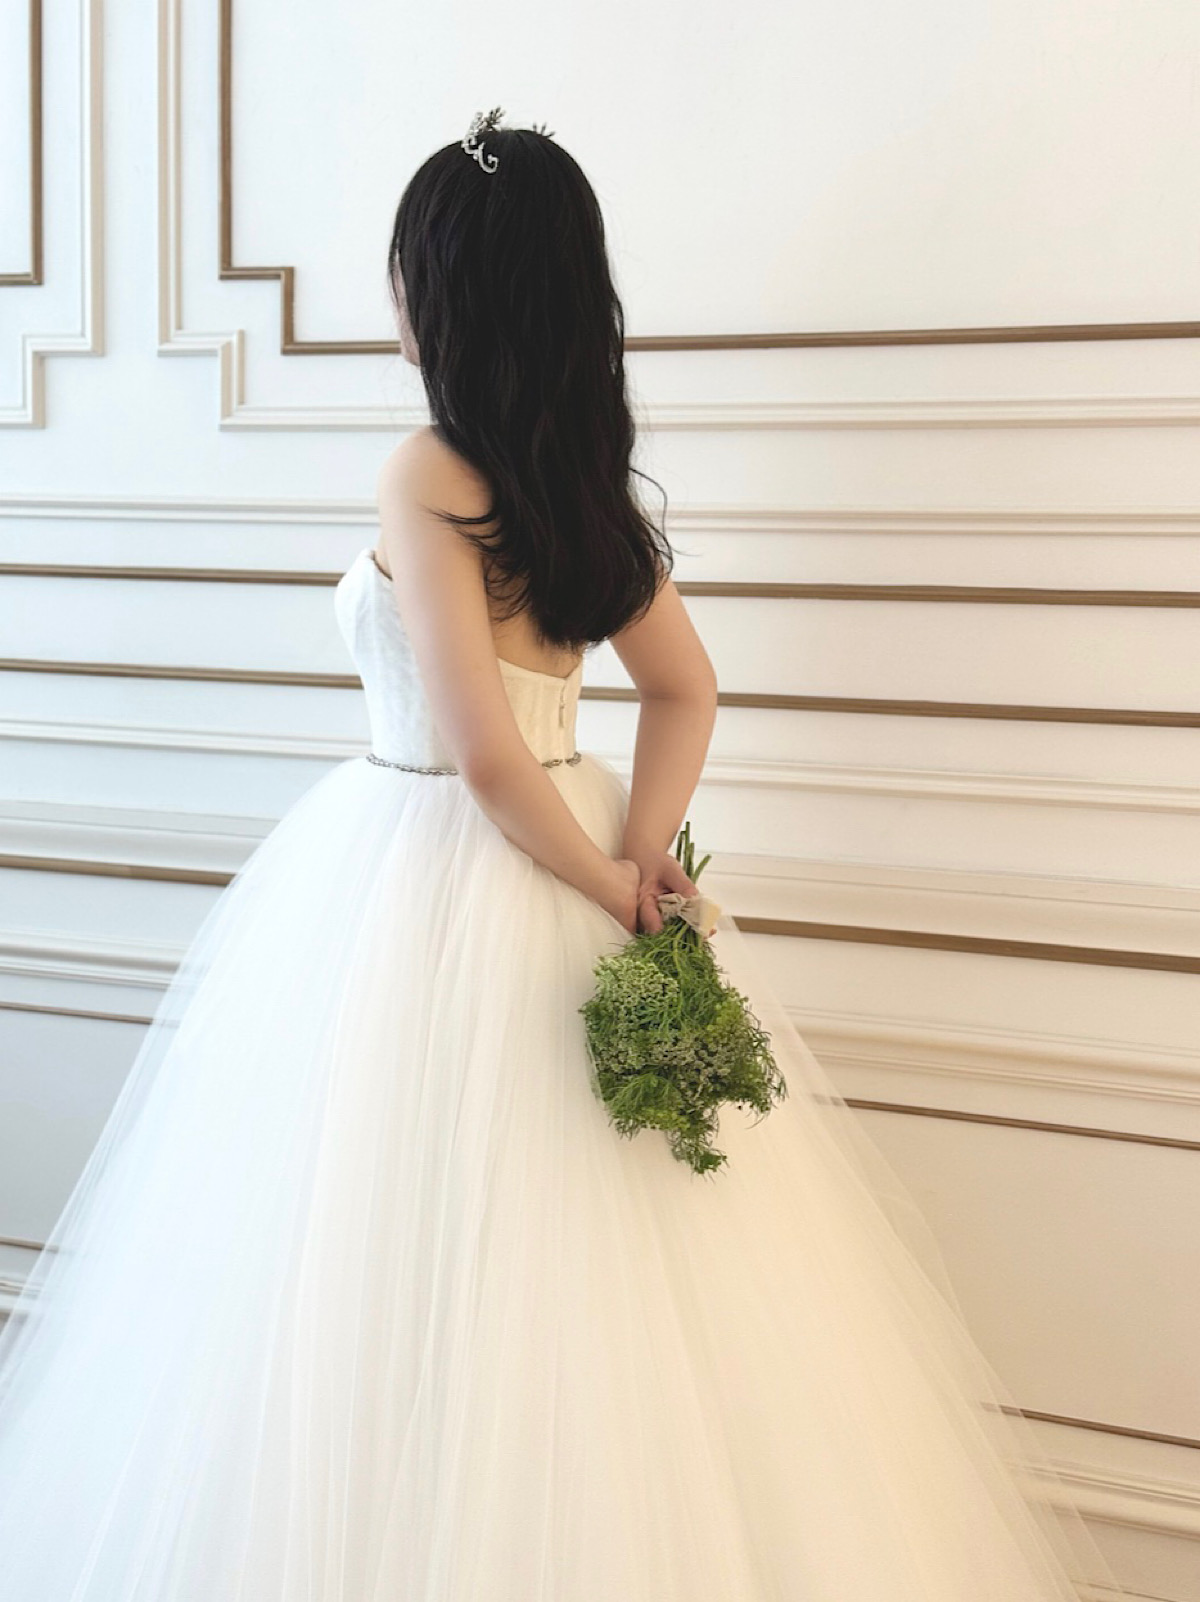 東海エリアの結婚式会場におすすめなアットホームさ感じると透明感たっぷりなチュールのプリンセスラインのインポートウェディングドレス